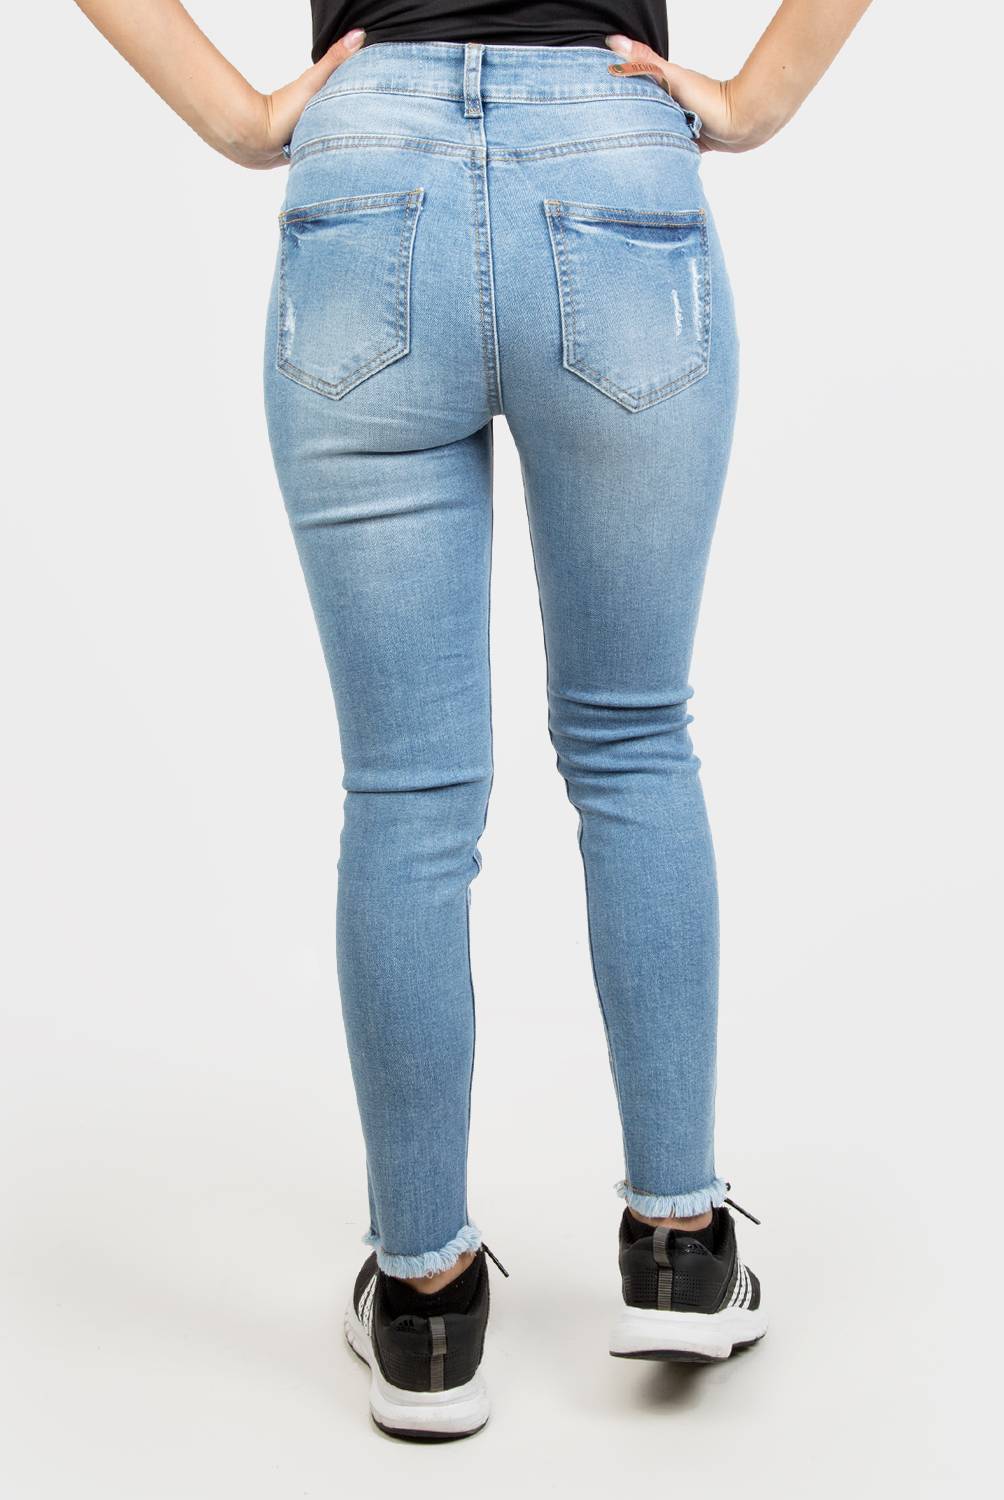 DENIMLAB - Jeans Skinny